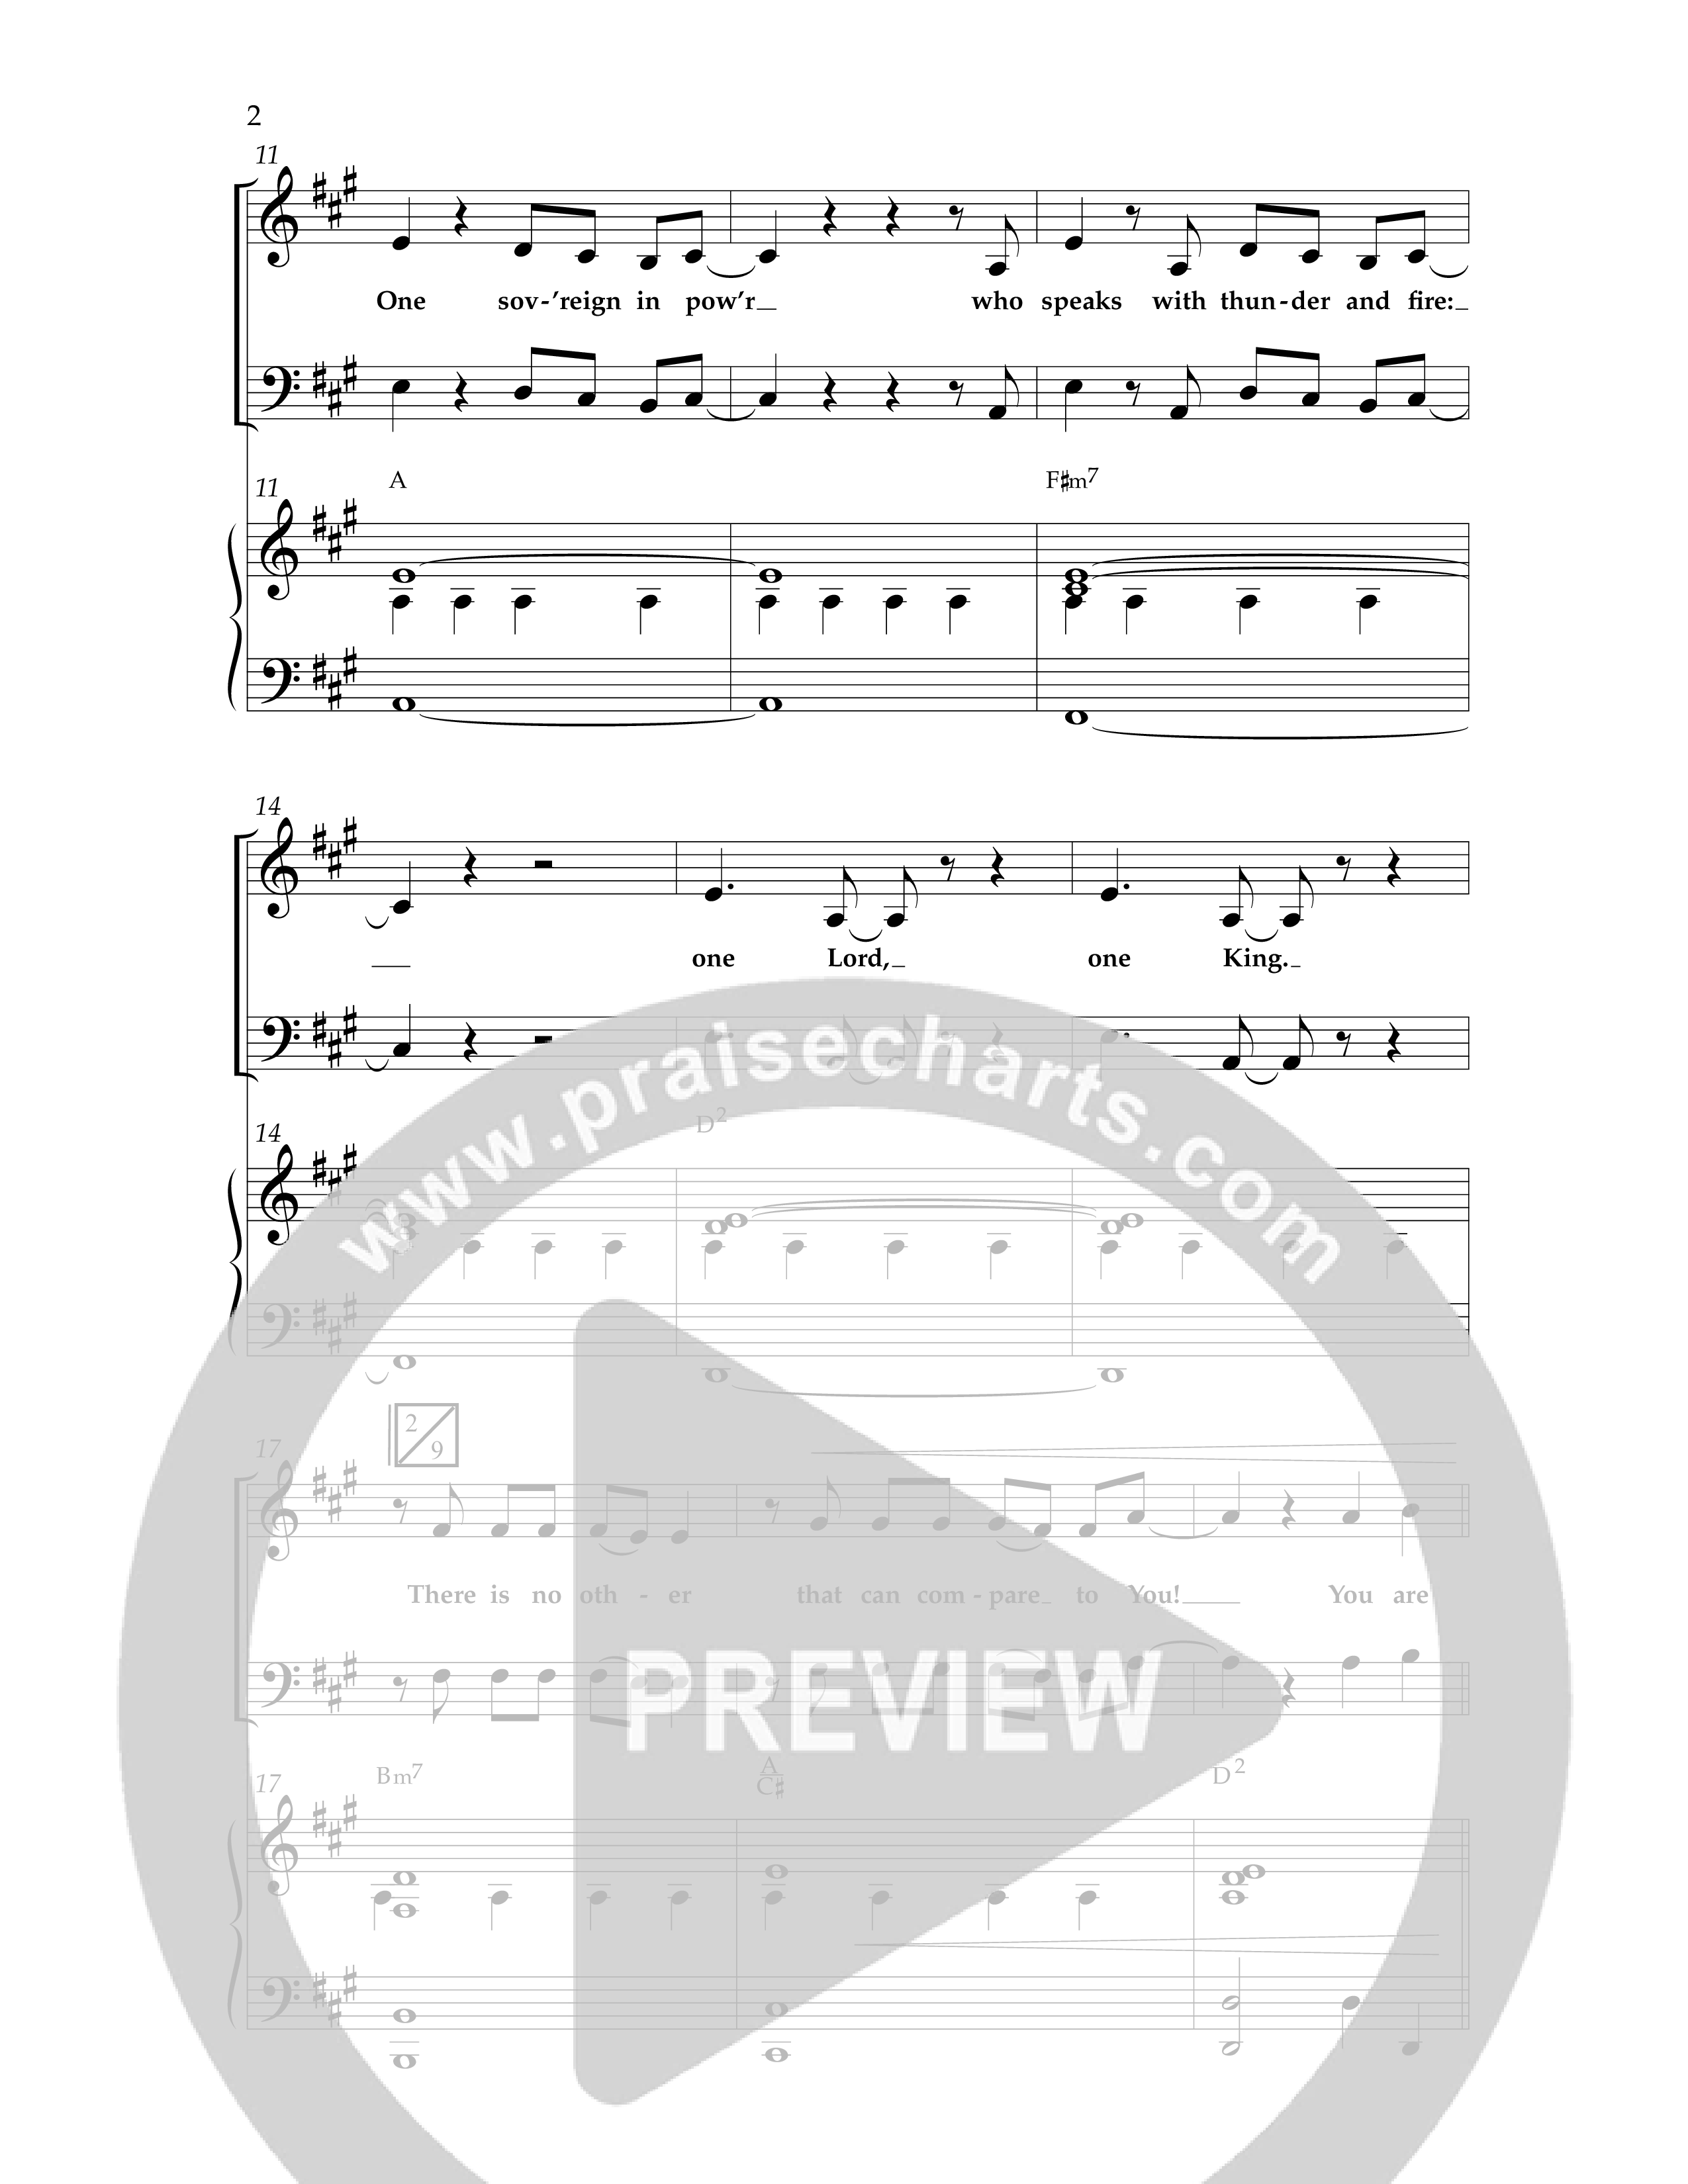 One True God (Choral Anthem SATB) Anthem (SATB/Piano) (Lifeway Choral / Arr. Bradley Knight)